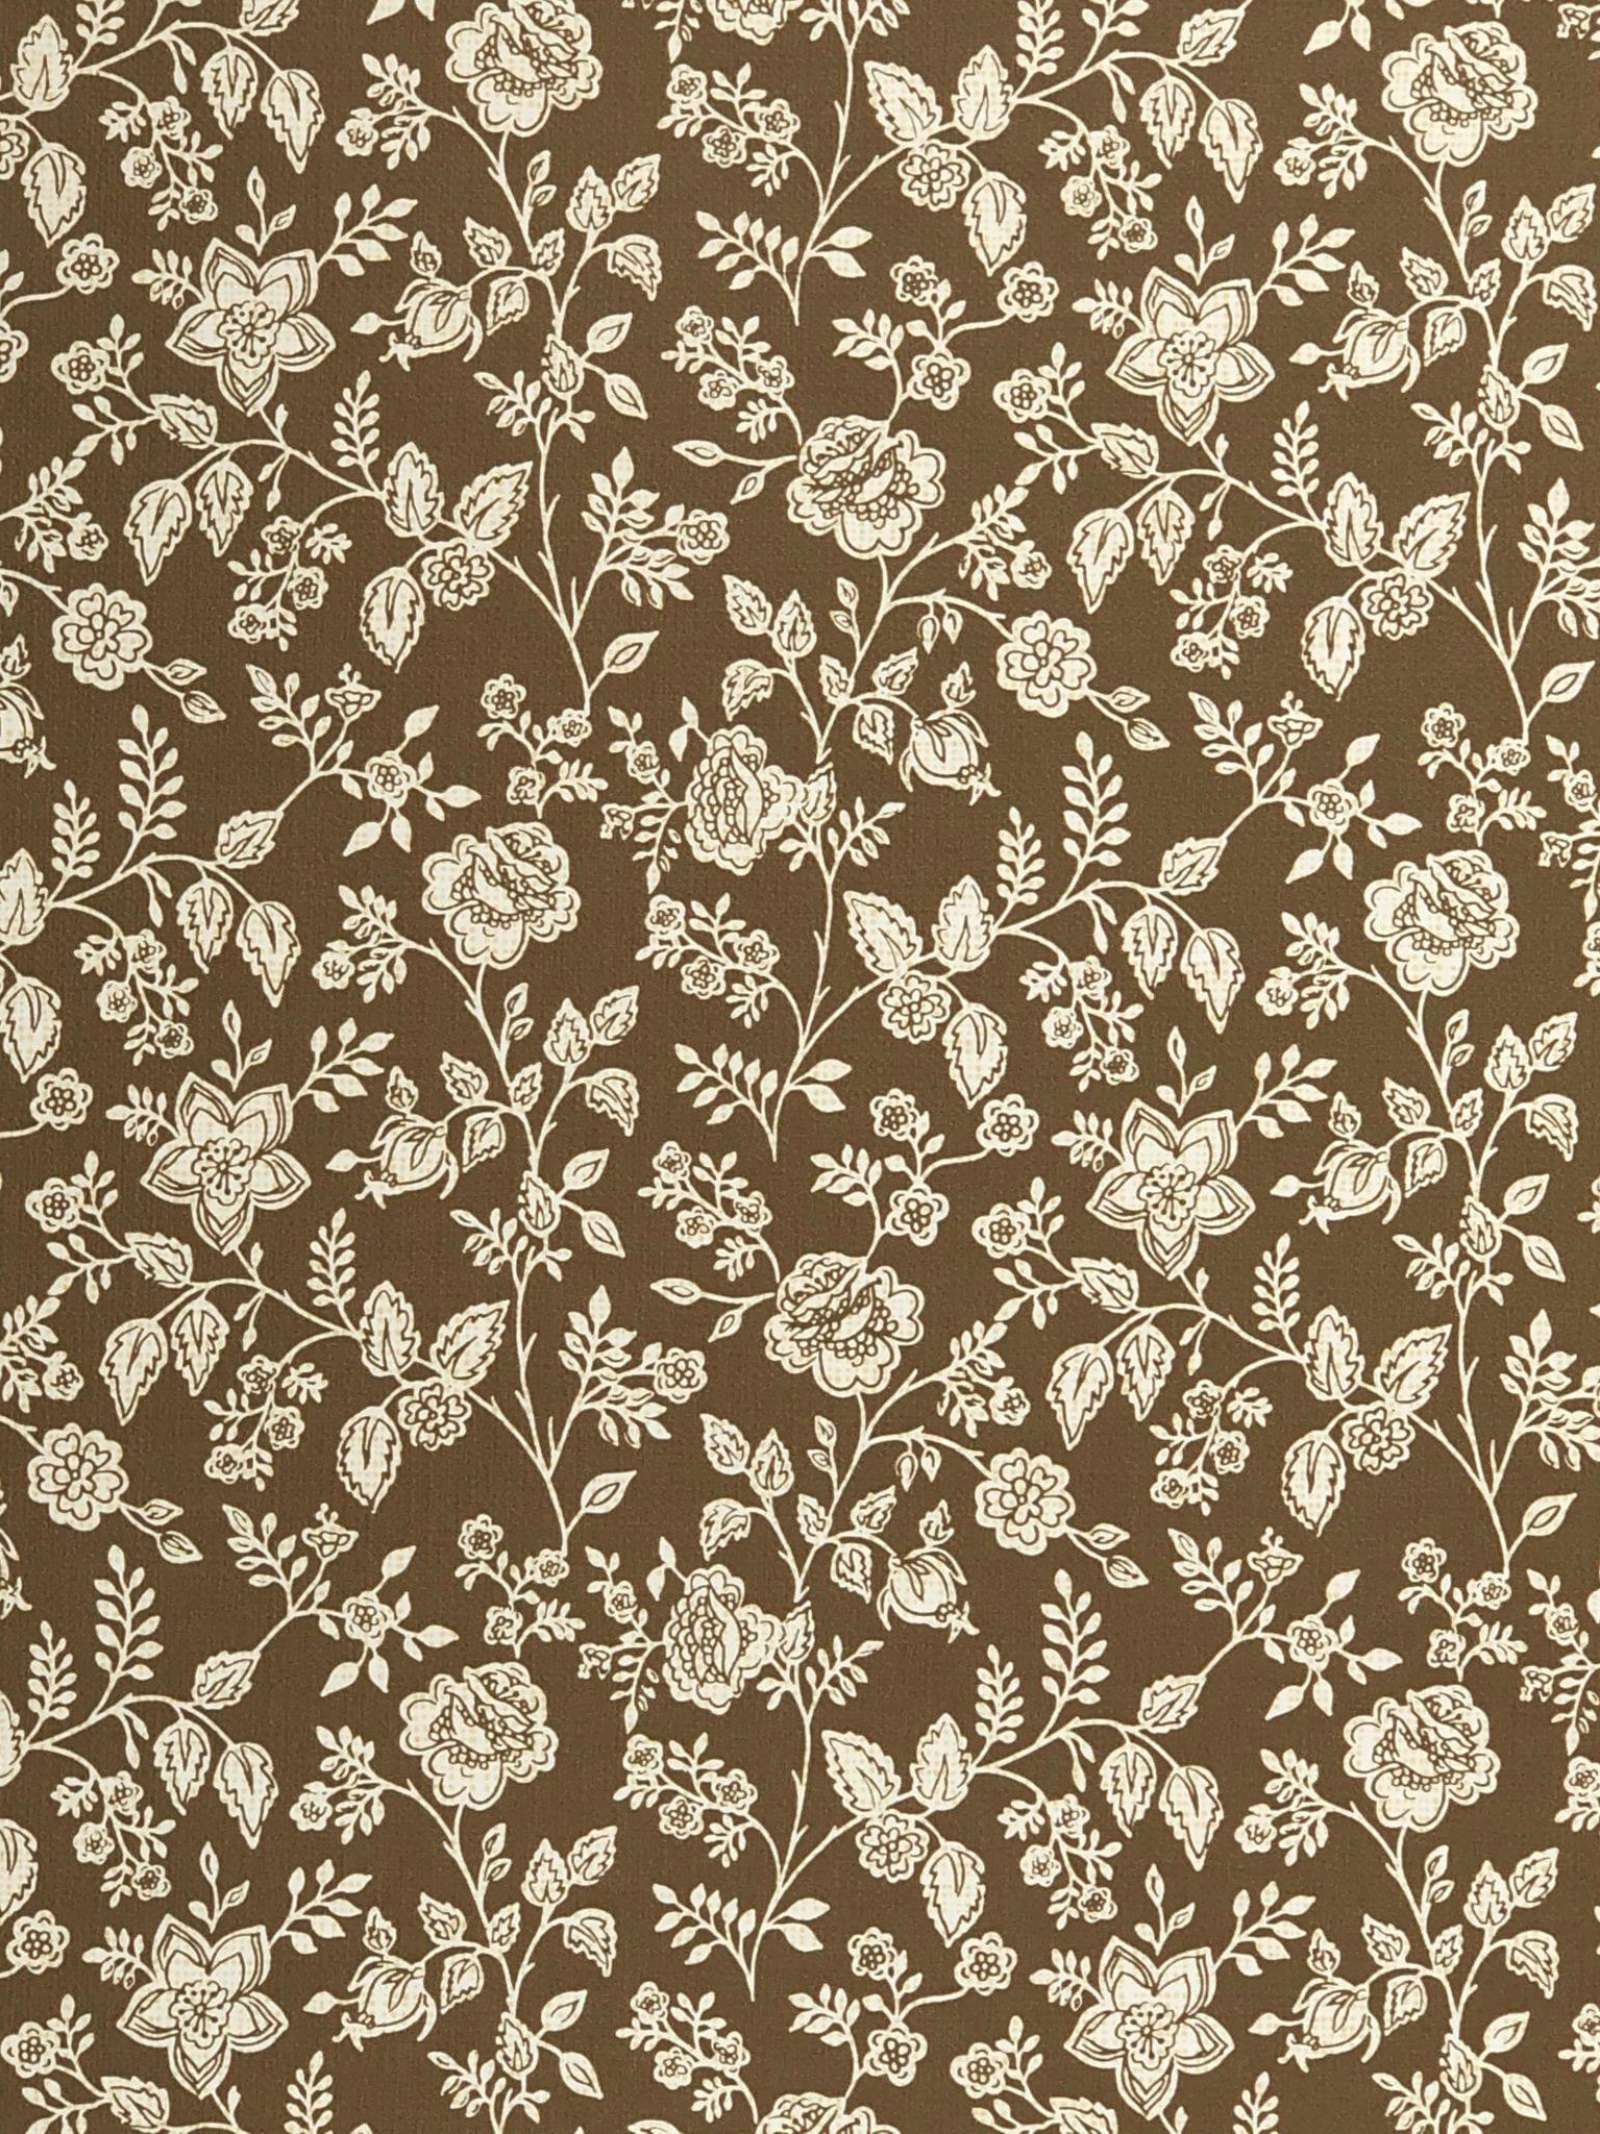 Indian Velvet Floral  Botanical Brown Wallpaper Price in India  Buy  Indian Velvet Floral  Botanical Brown Wallpaper online at Flipkartcom